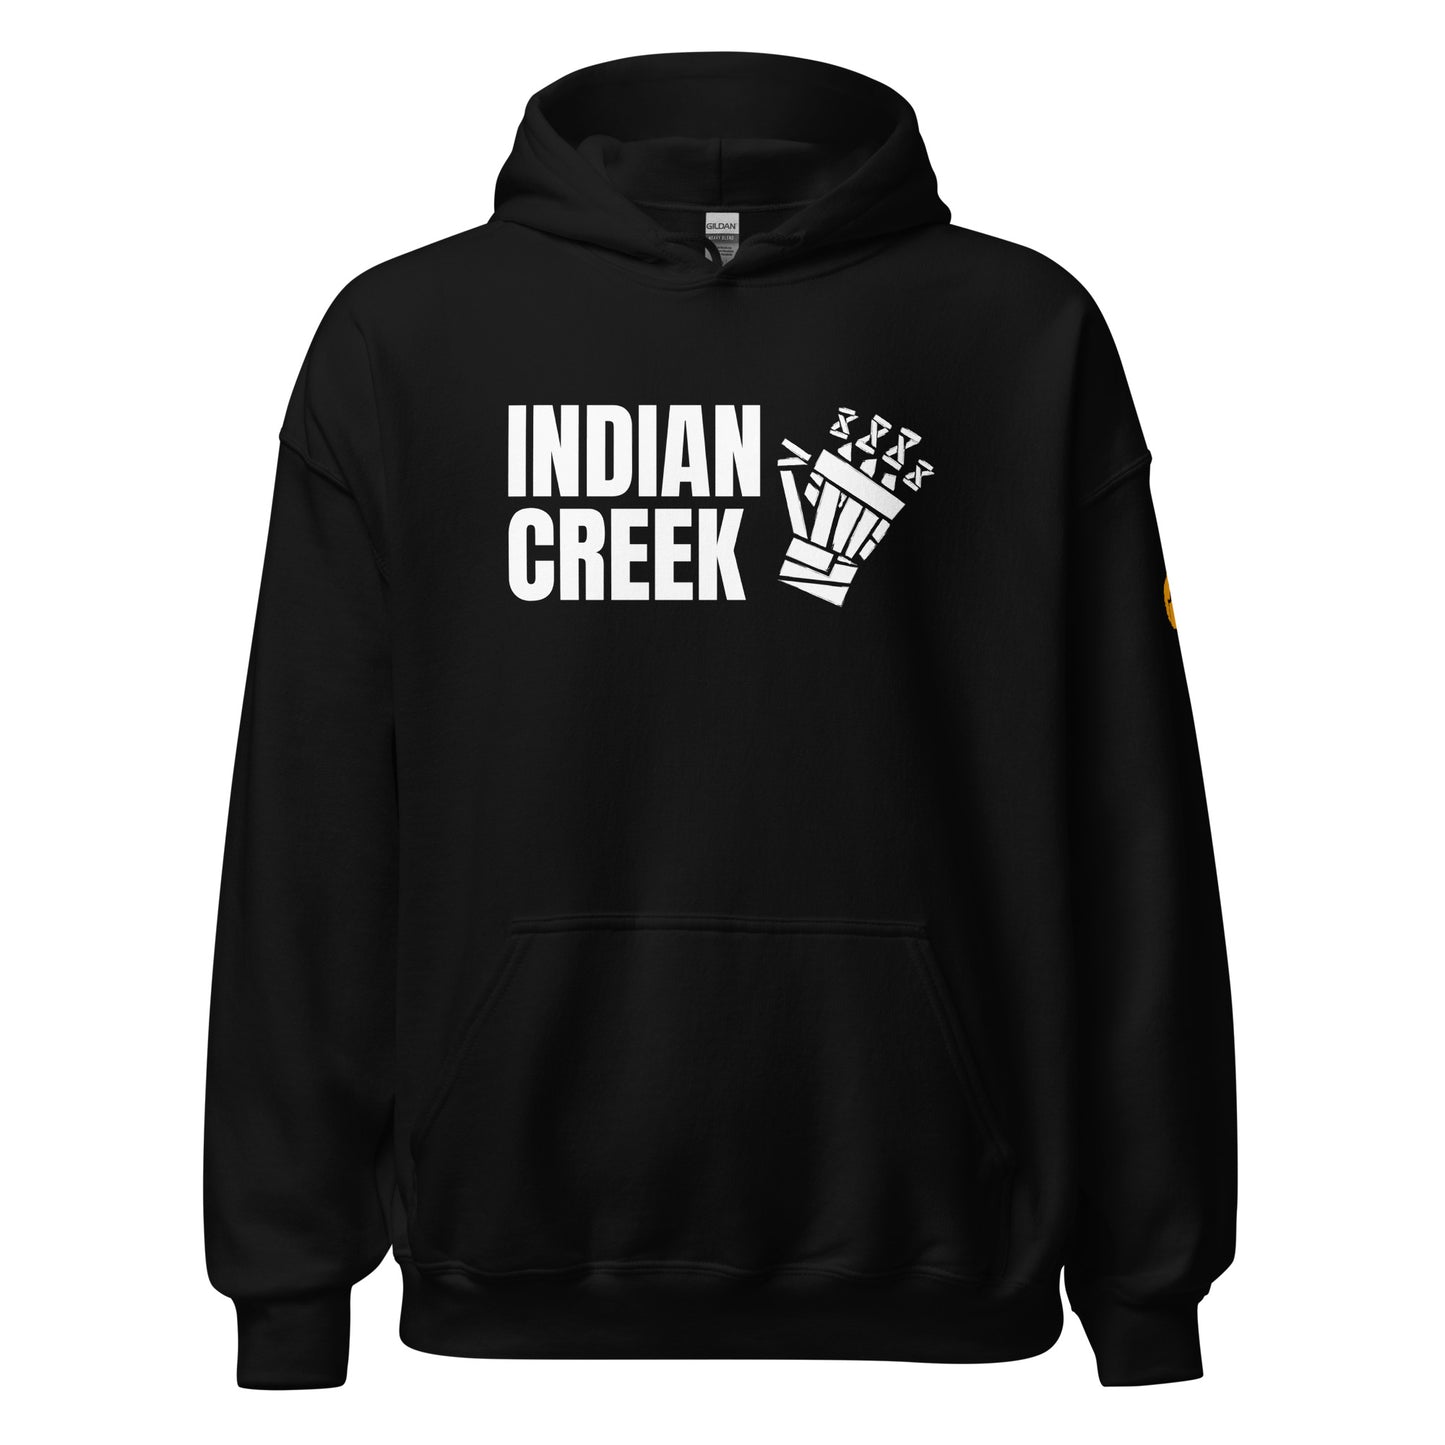 Indian Creek Tape Glove Hoodie